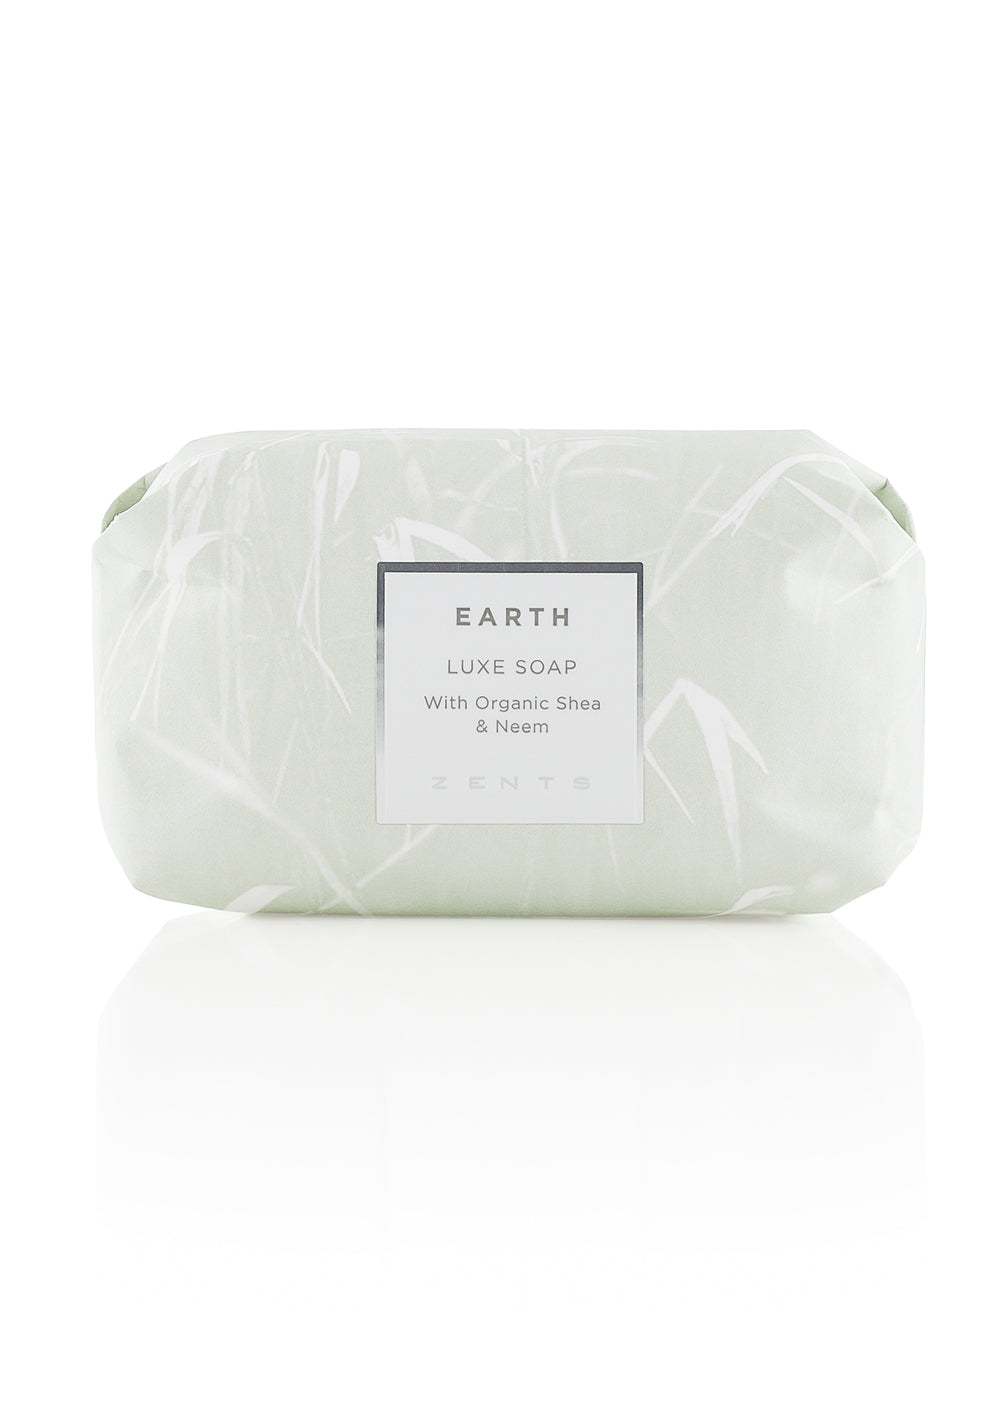 Zents Luxe Soap